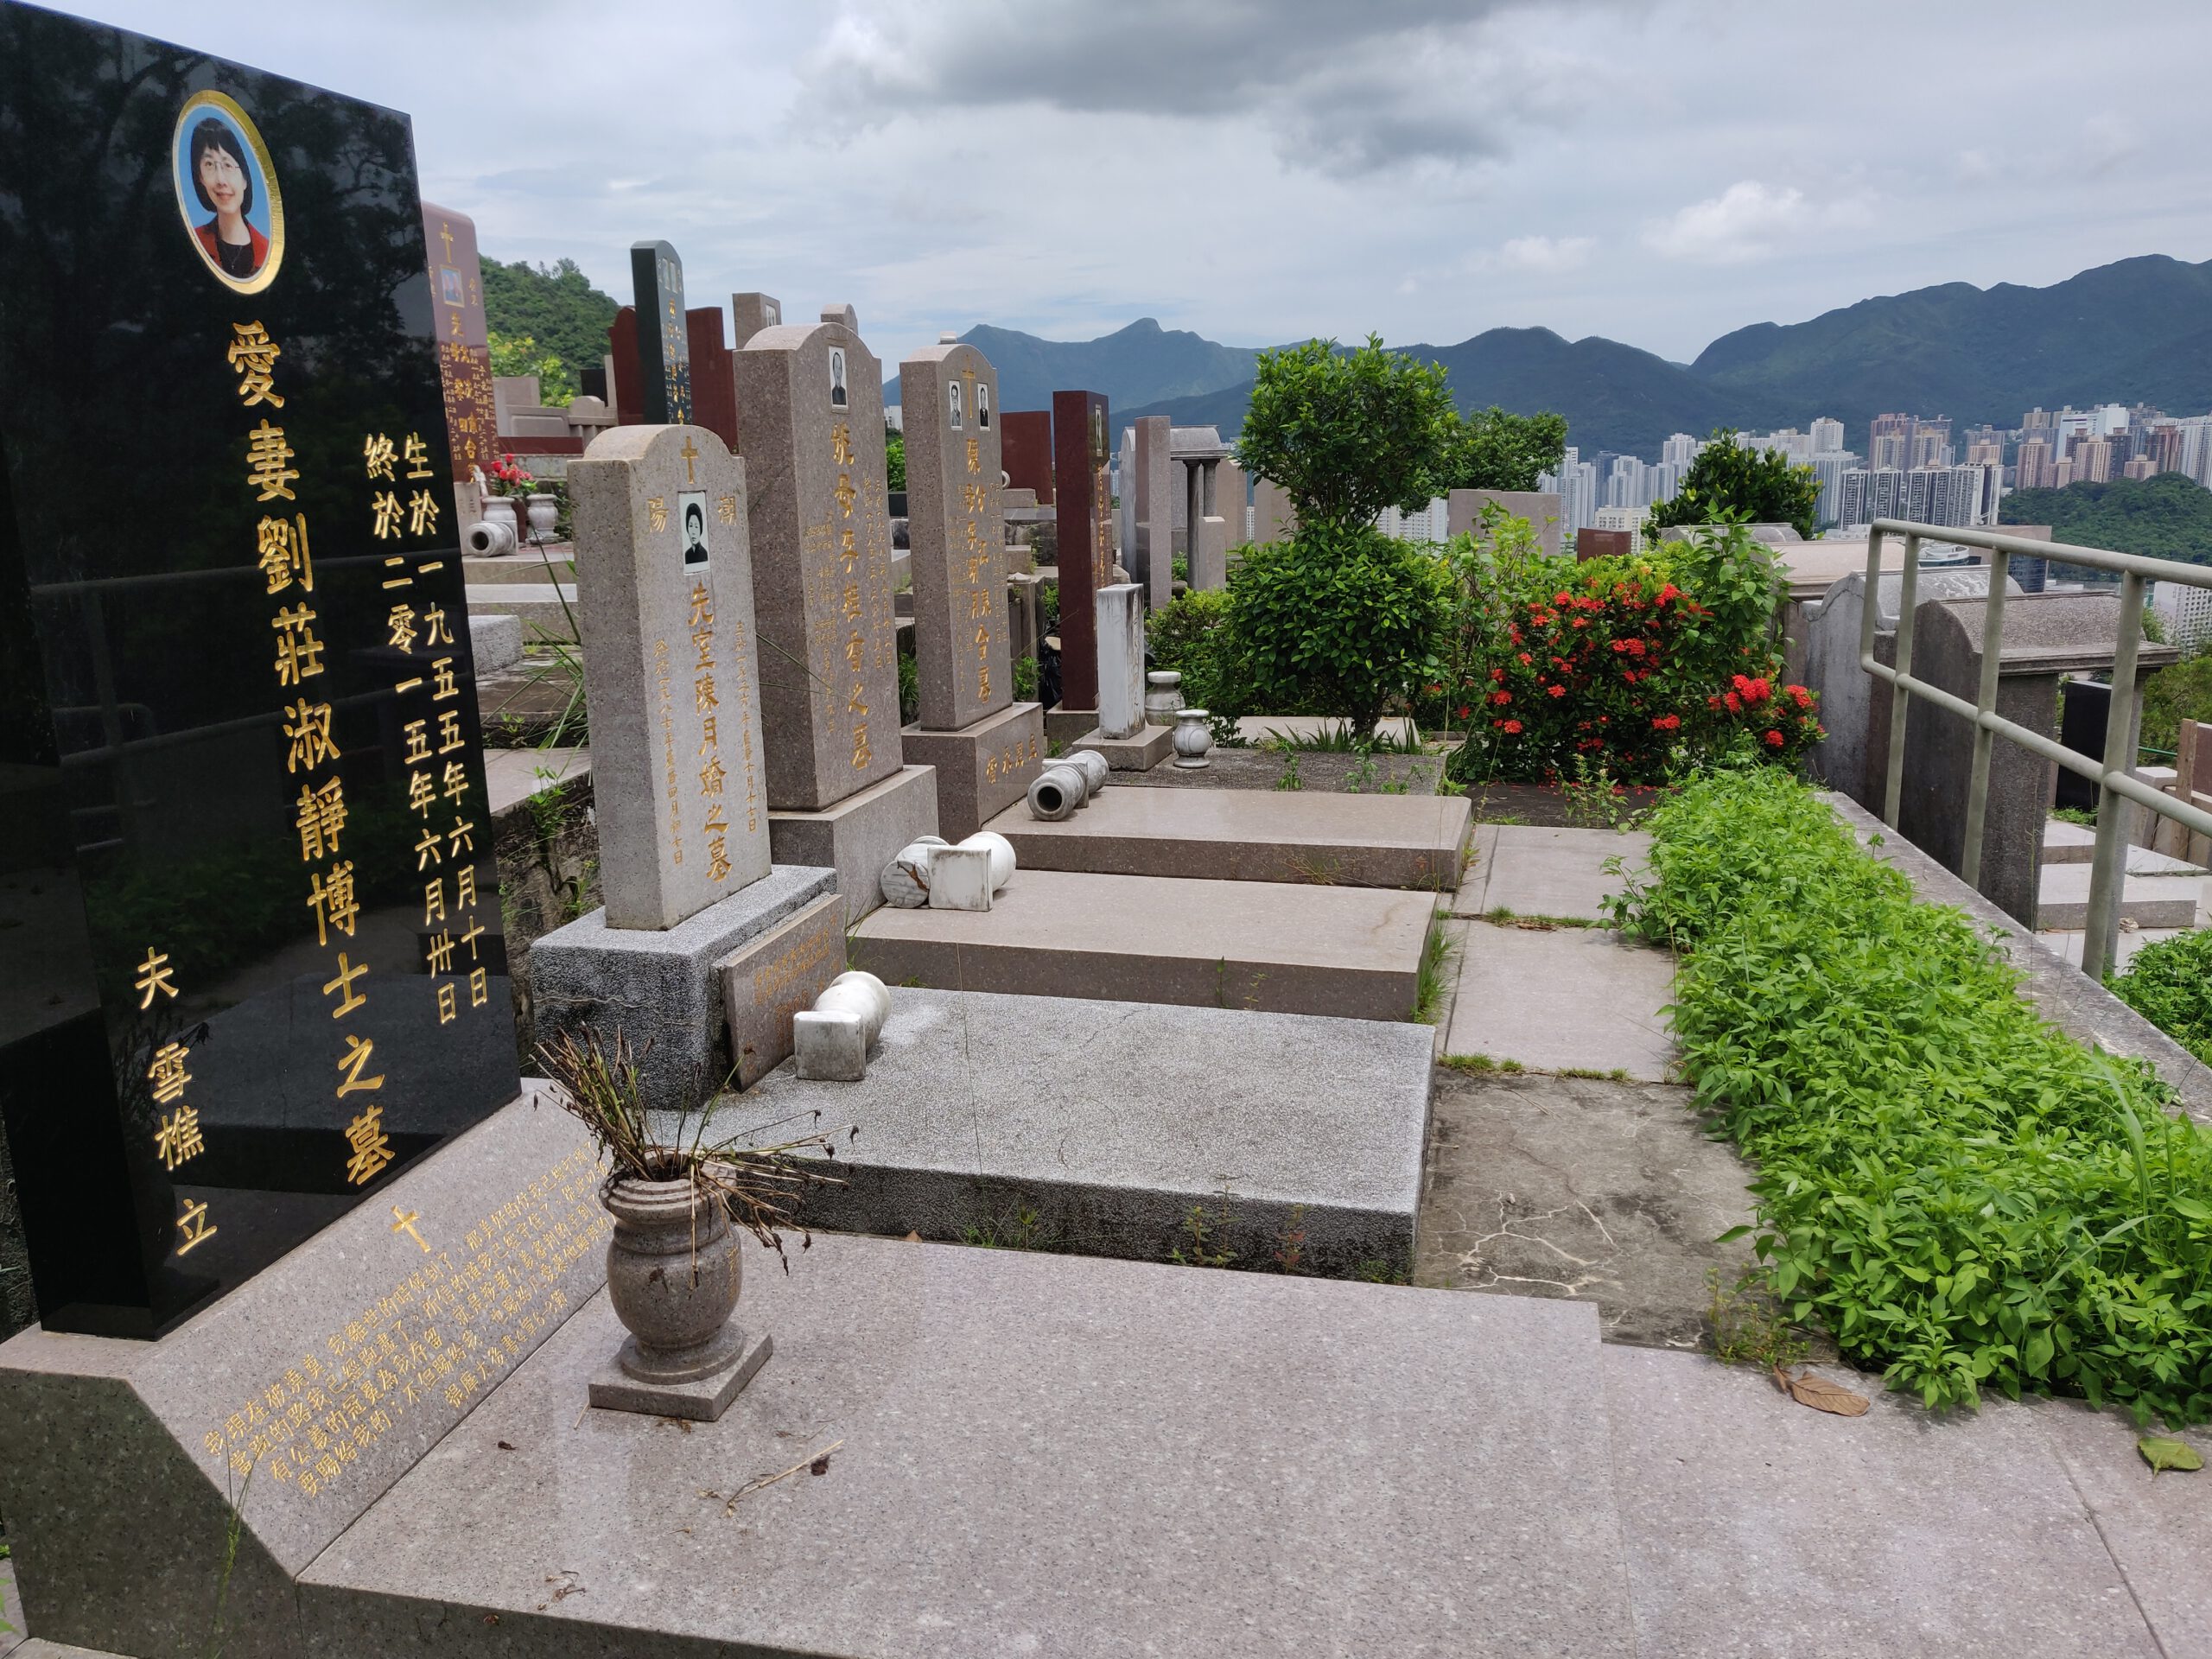 香港墓地例子。和住房一樣，價格比世界各地都高。公墓已滿，且限葬六年。